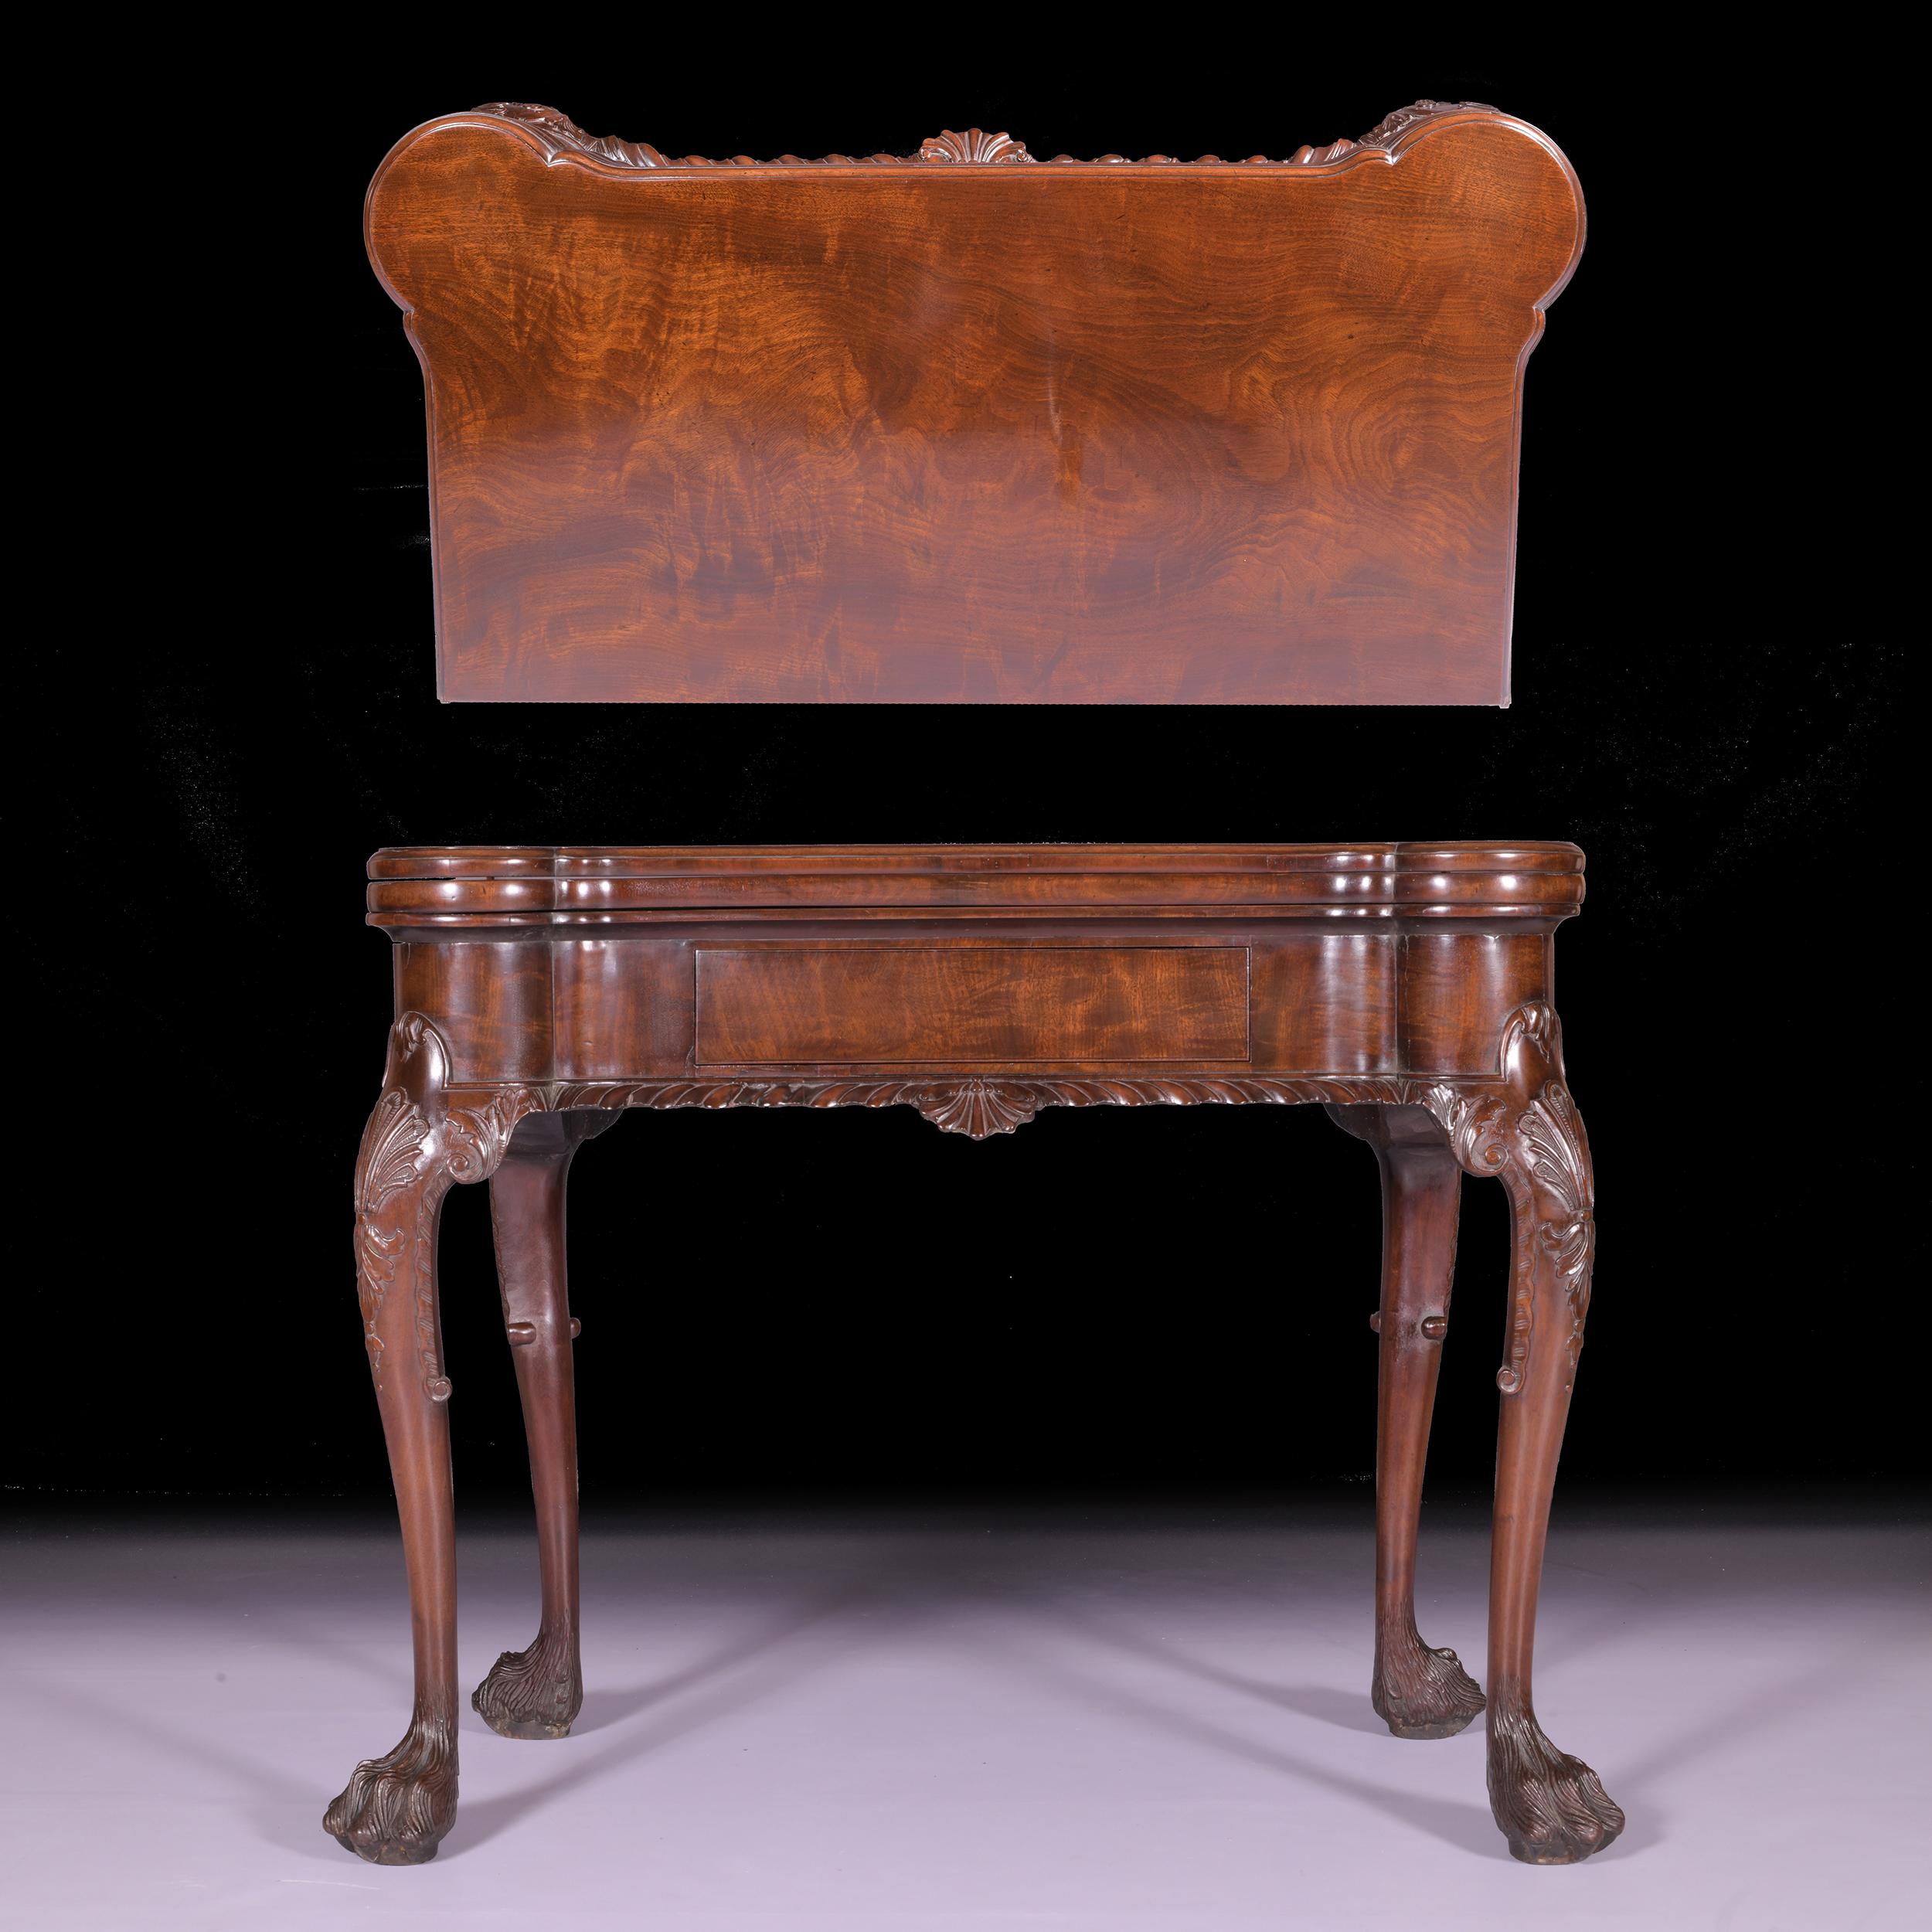 Eine außergewöhnliche 19. Jahrhundert irischen George II Stil Mahagoni Spiele und Tee Tisch von eared rechteckige Form, die erste aufklappbare Oberseite auf massivem Mahagoni, die zweite aufklappbare Oberseite umschließt eine Baize Oberfläche mit